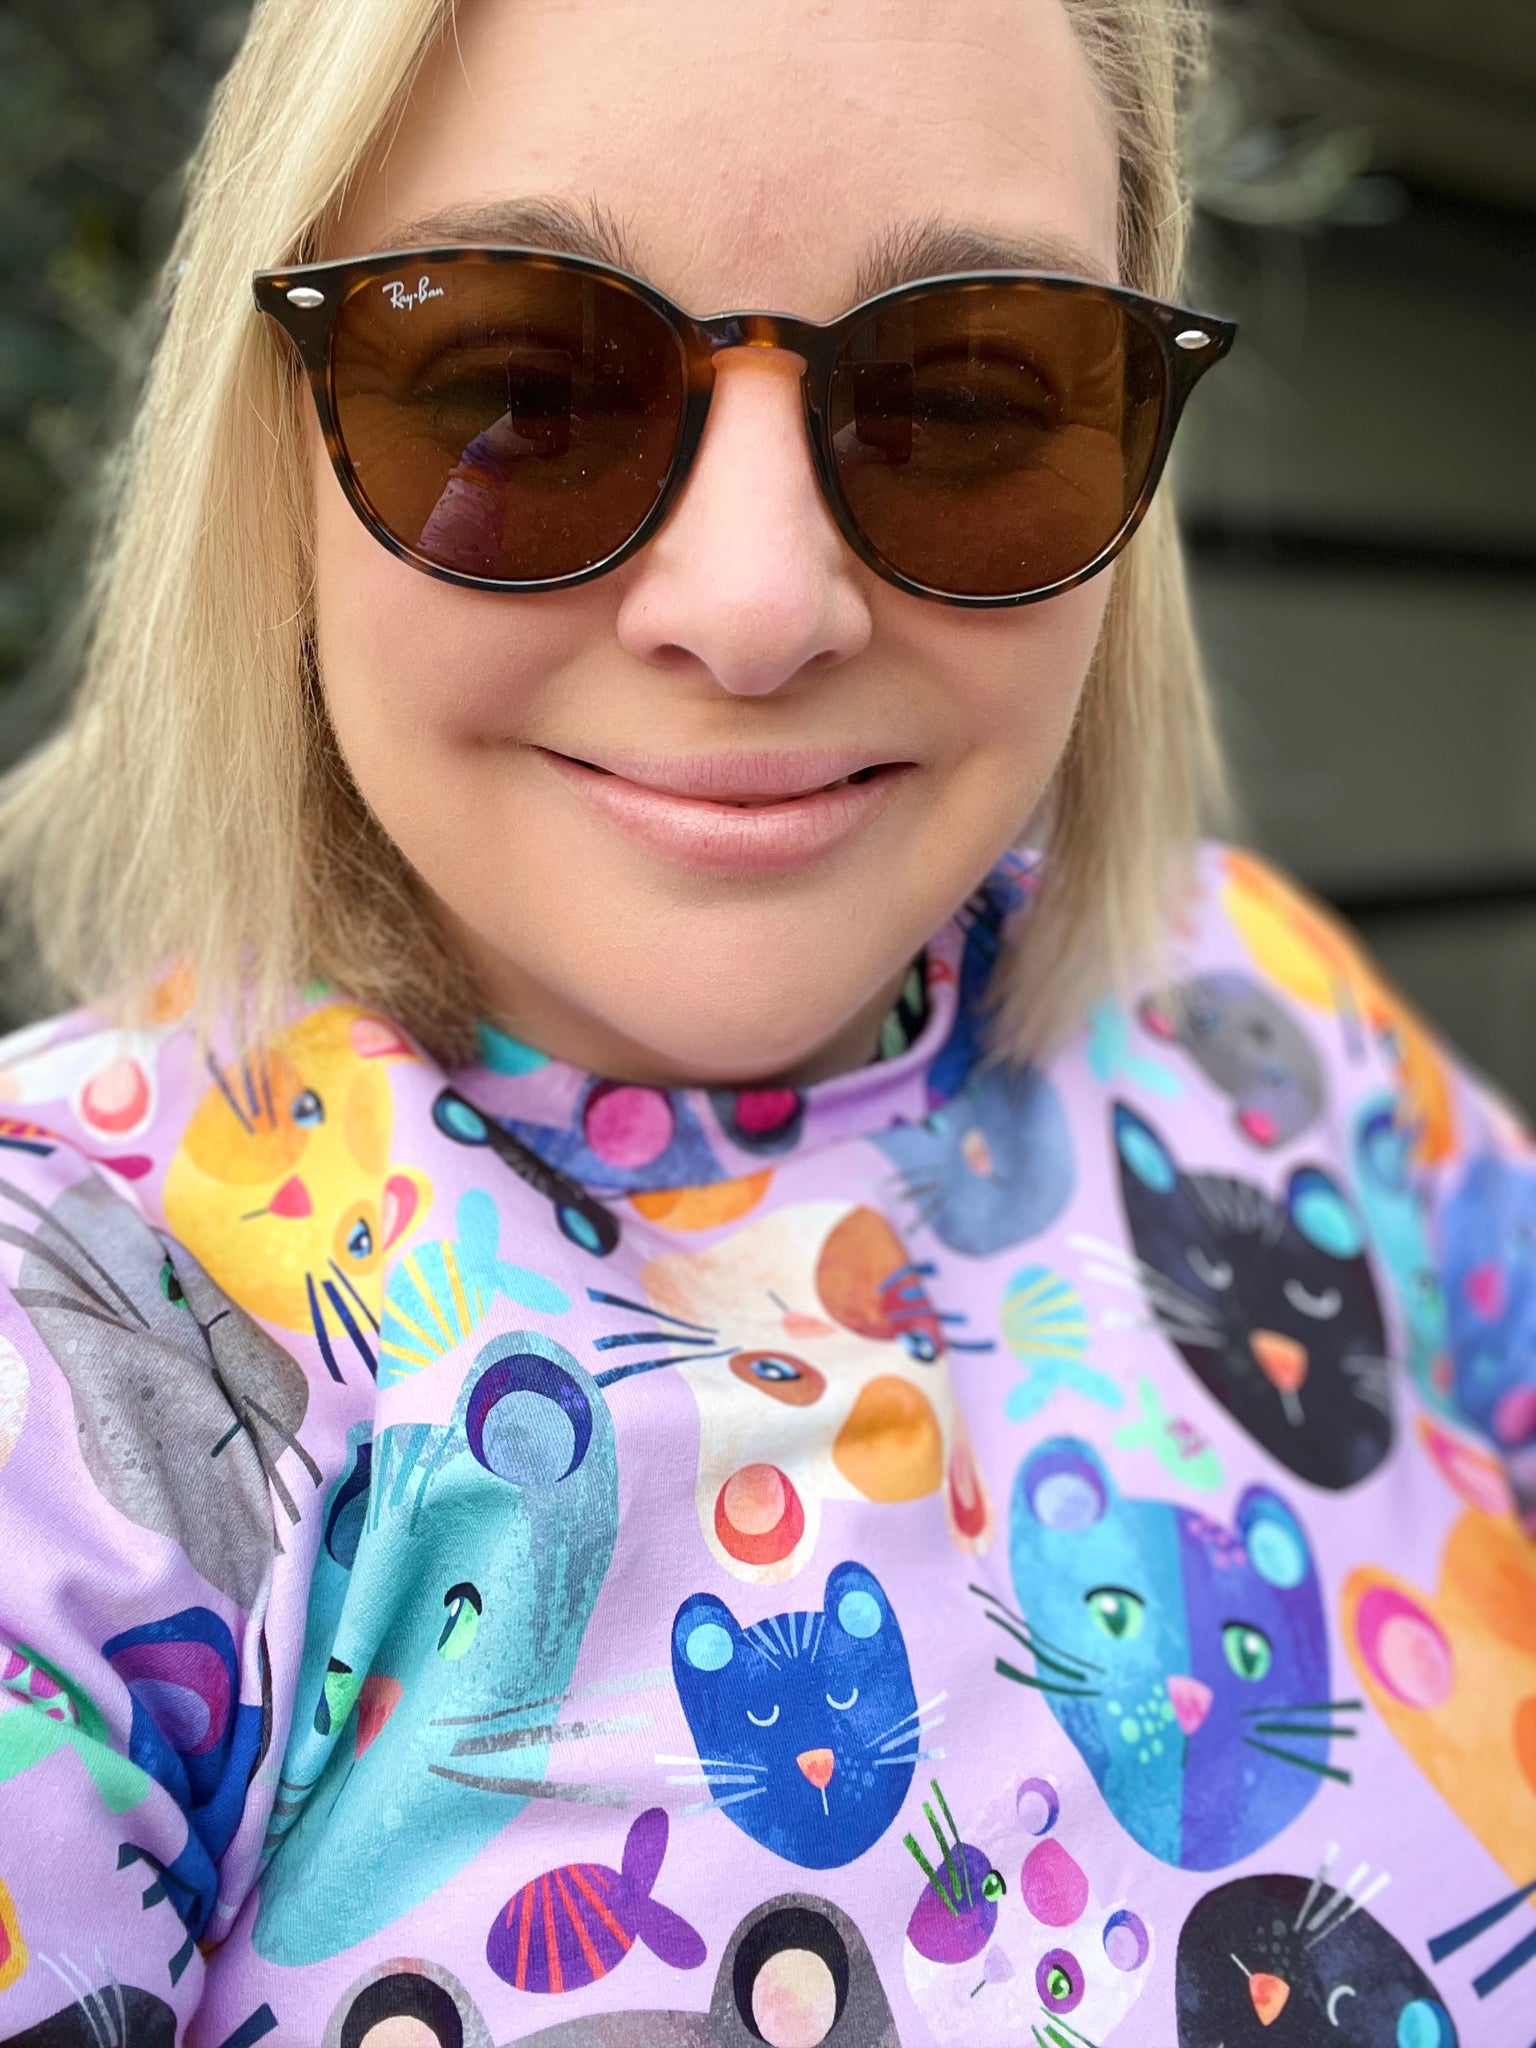 Ladies Sweatshirt in 'Lilac Cats' - Kasey Rainbow